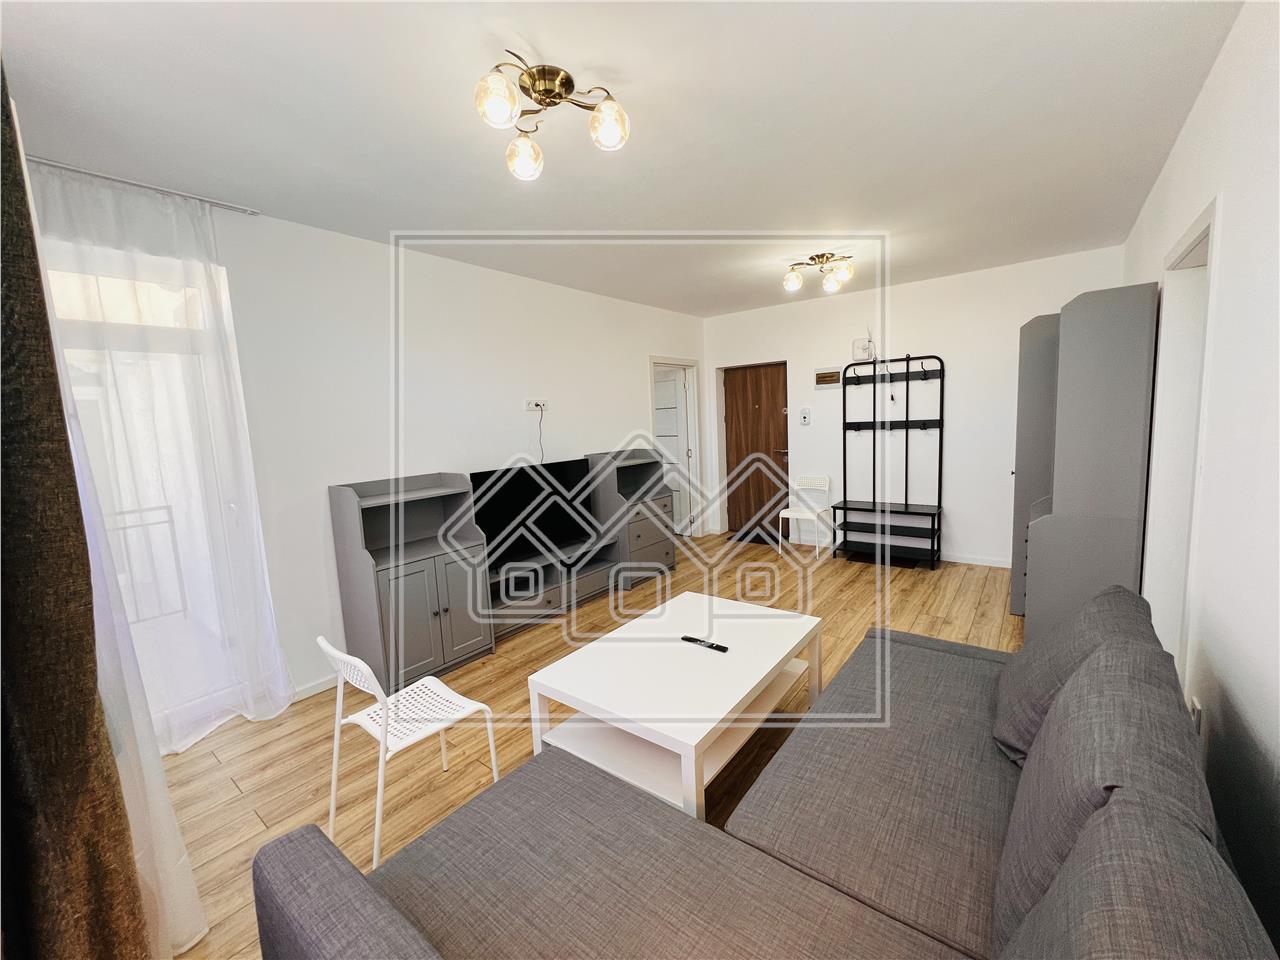 Wohnung zur Miete in Sibiu - Neubau - m?bliert und ausgestattet